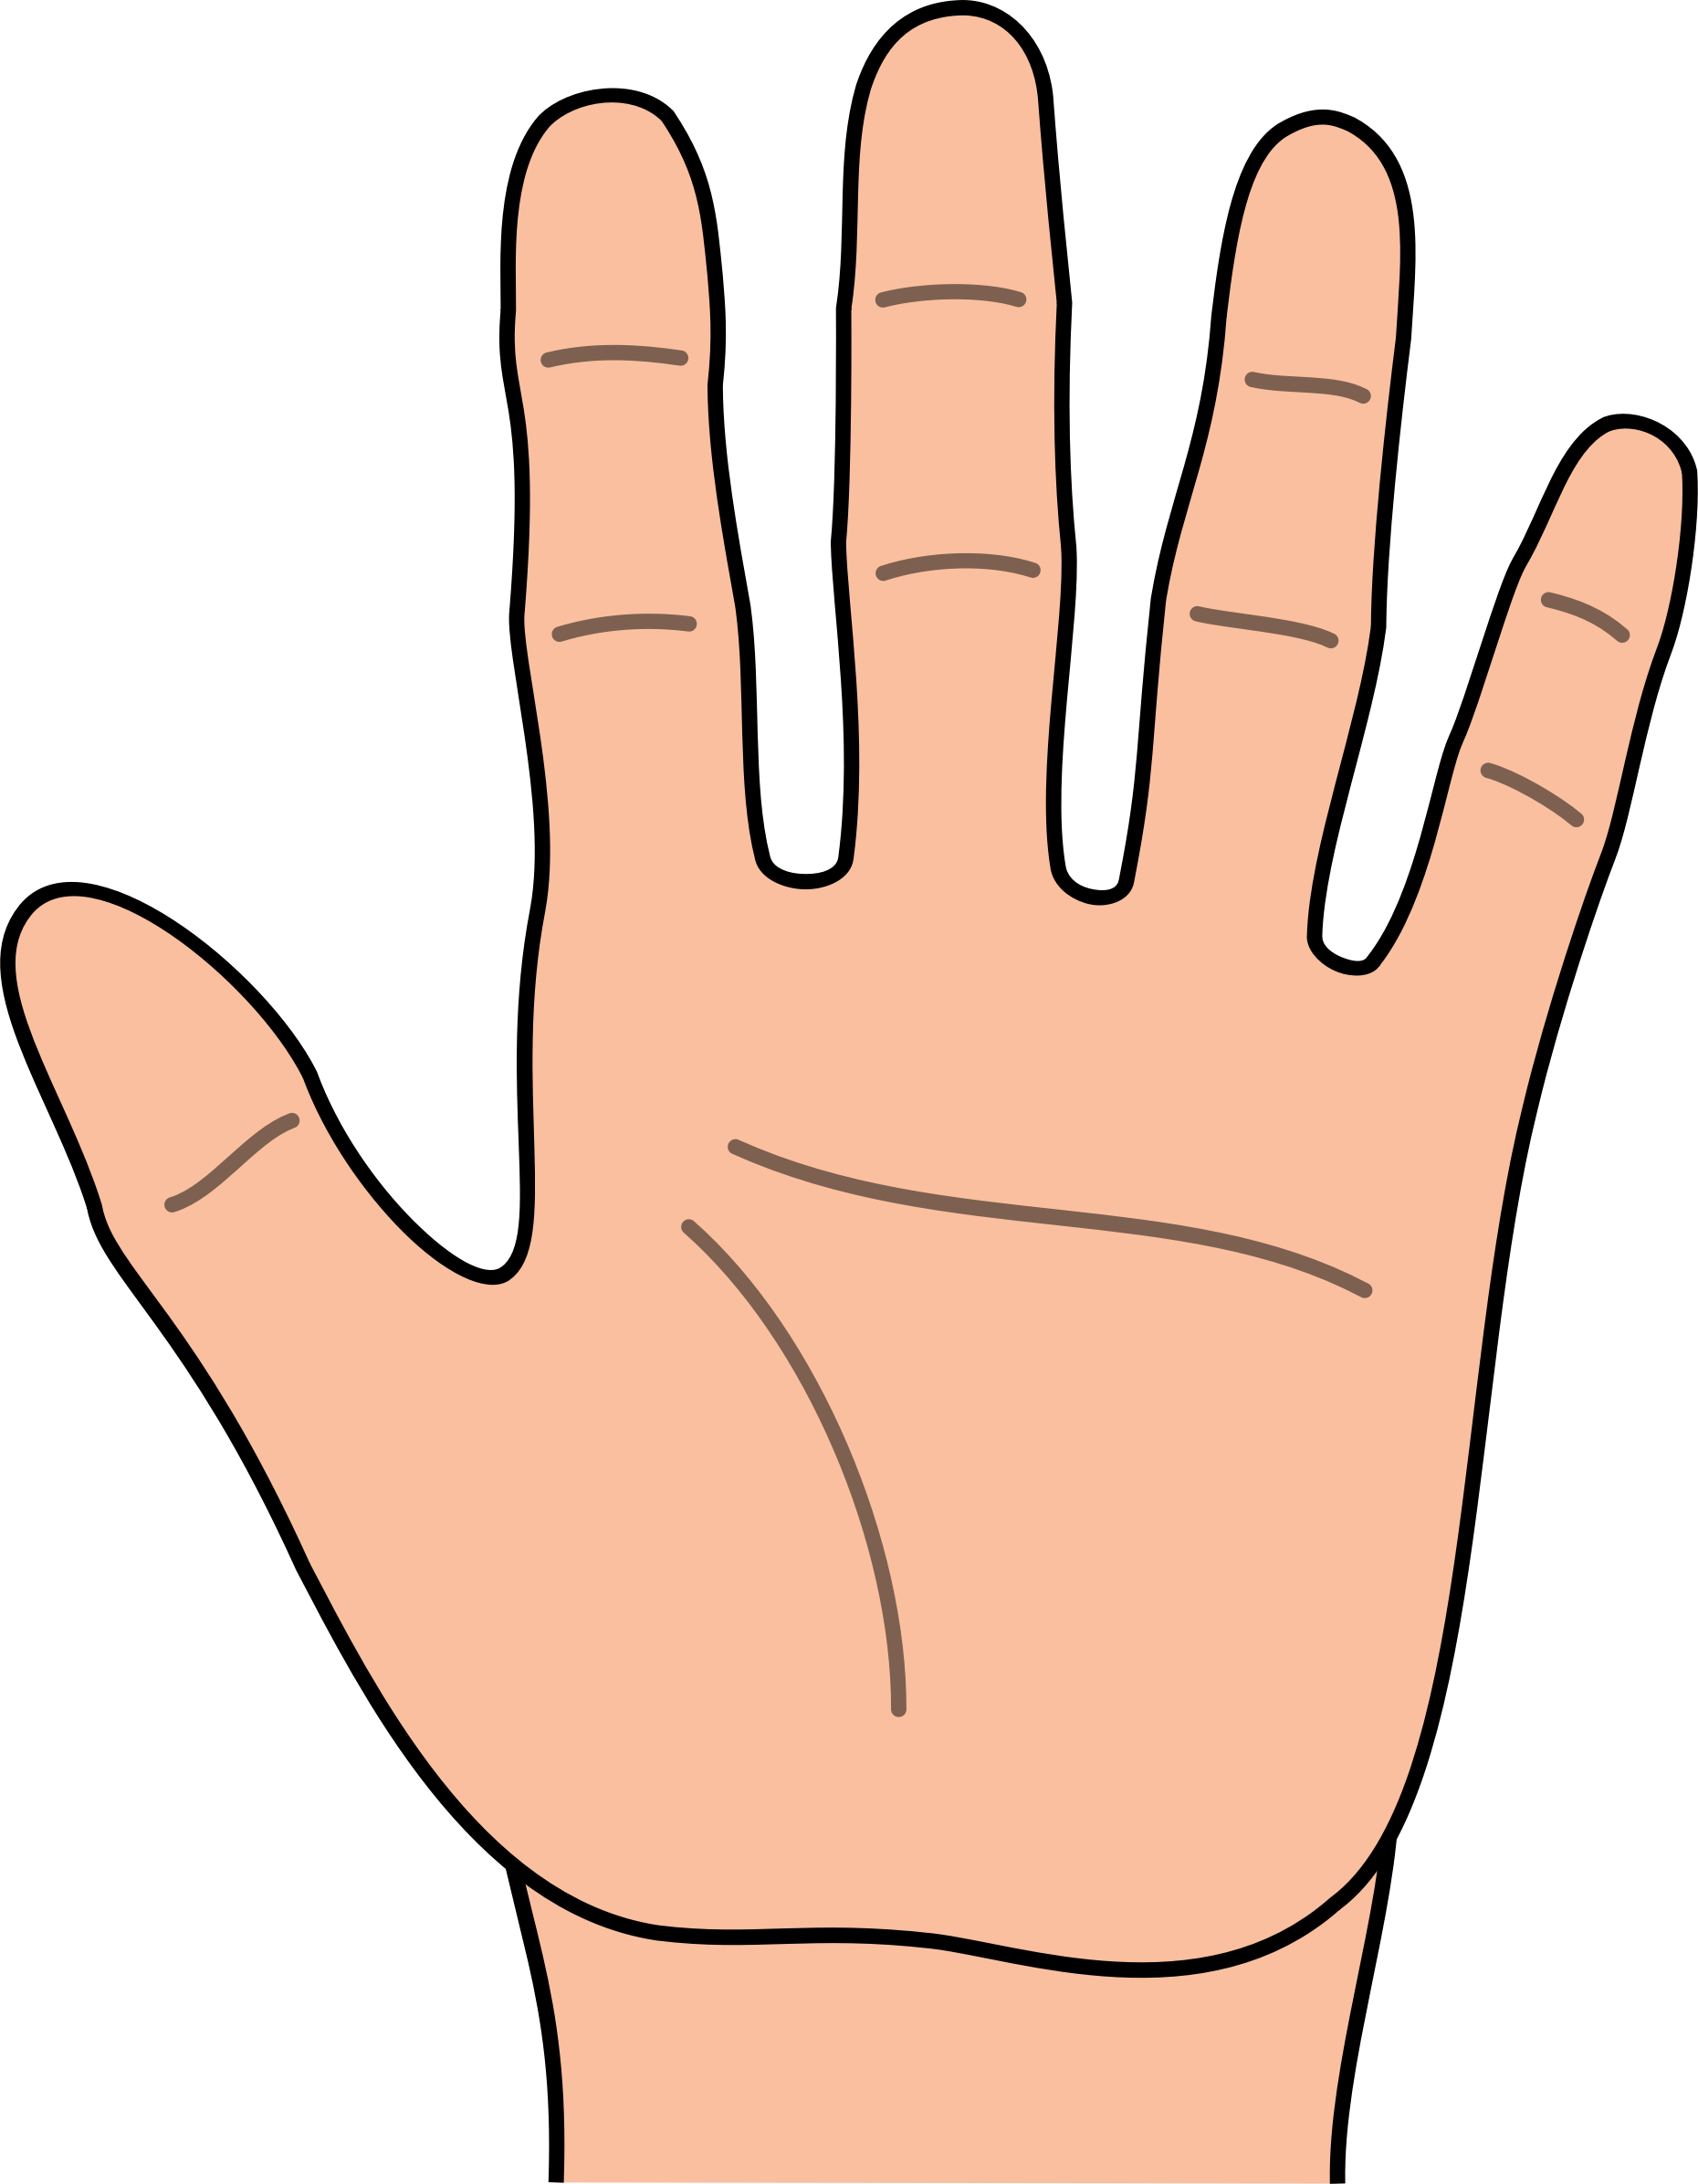 Hands Clipart - Tumundografico